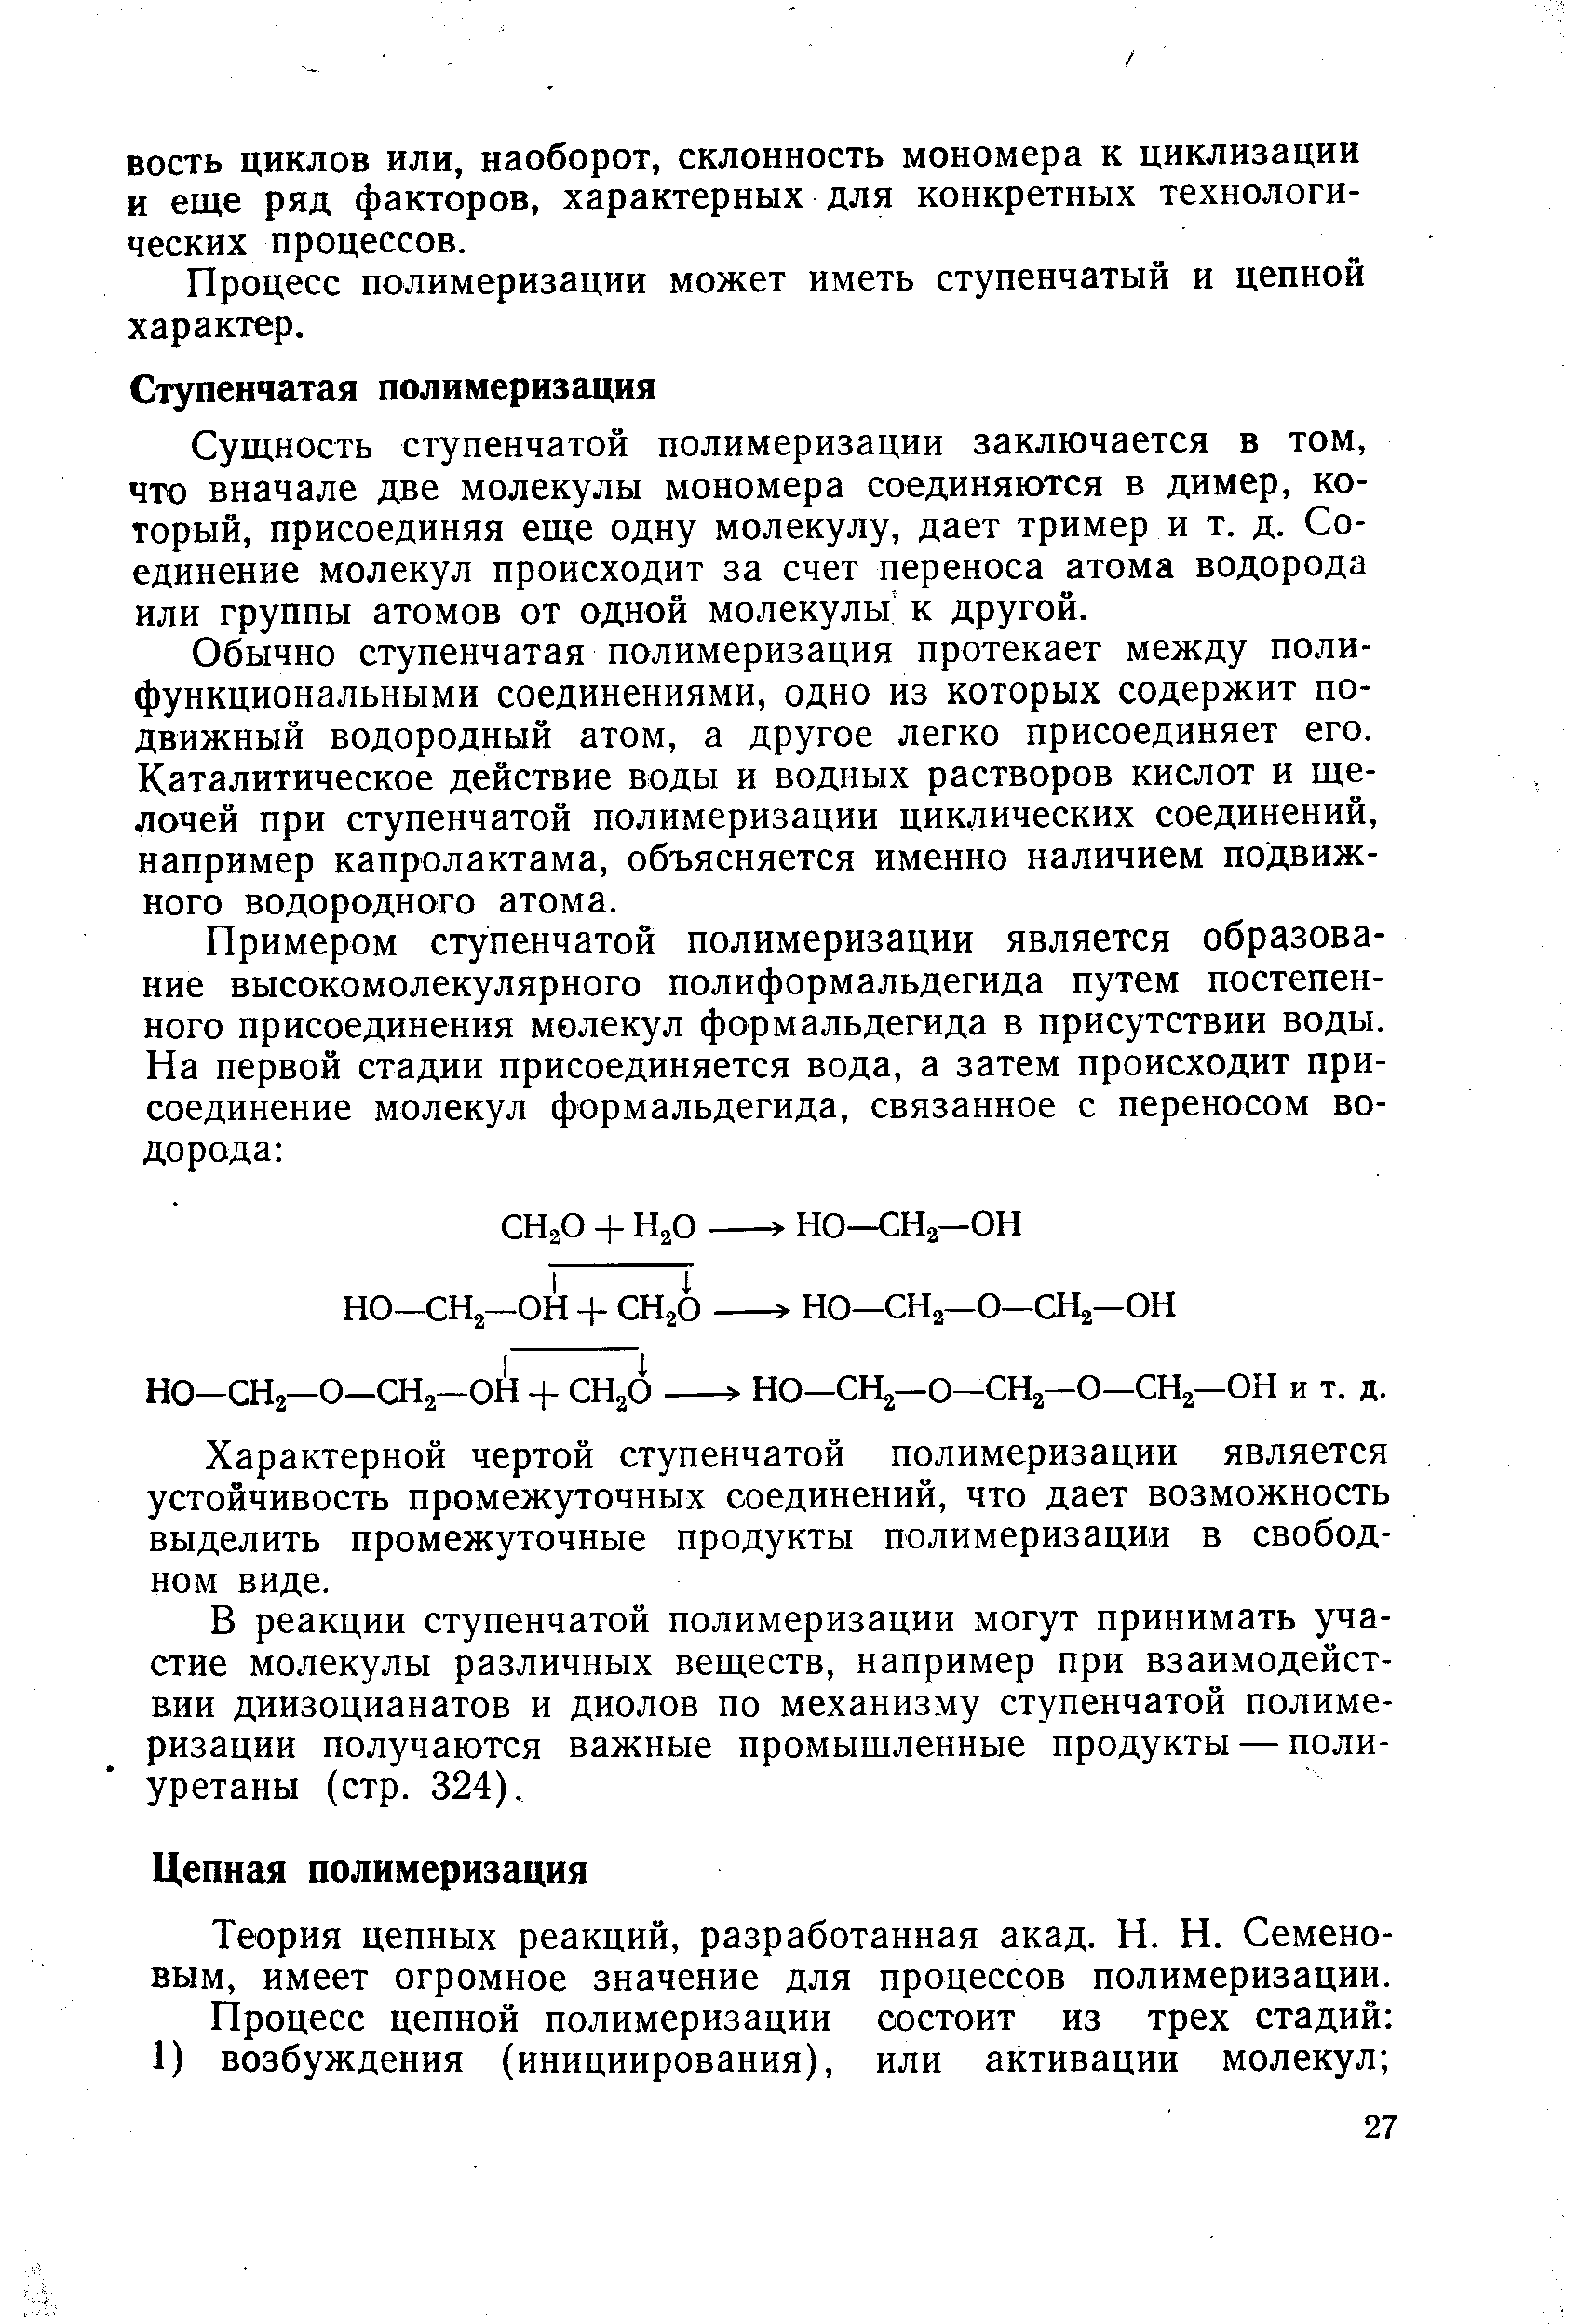 Теория цепных реакций, разработанная акад. Н. Н. Семеновым, имеет огромное значение для процессов полимеризации.